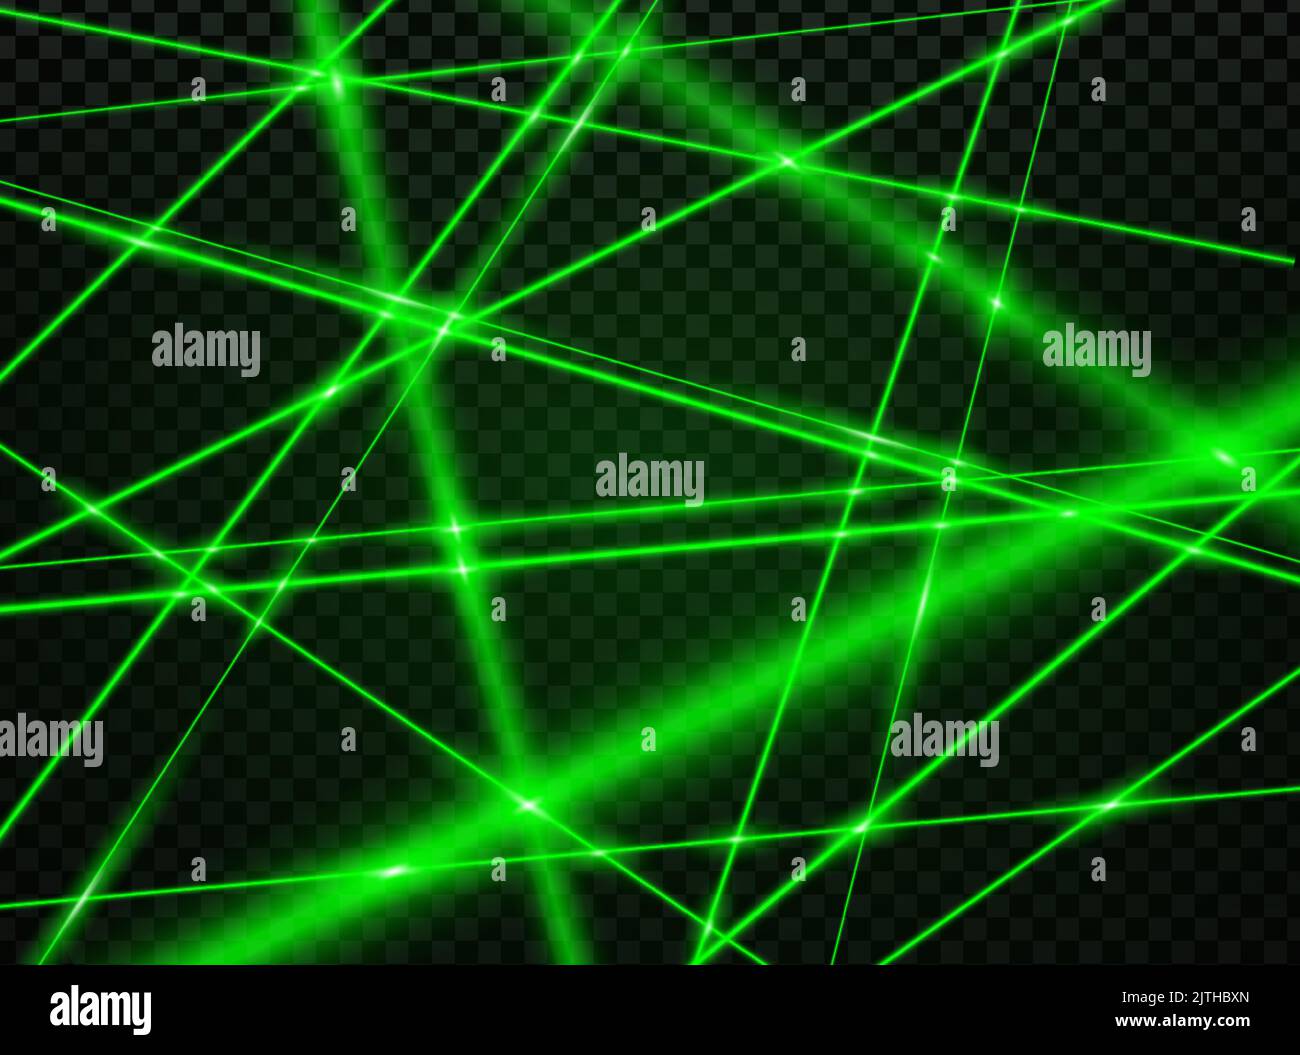 Fond De Lumière Laser Vert. Texture De Fond De Vitesse Et De